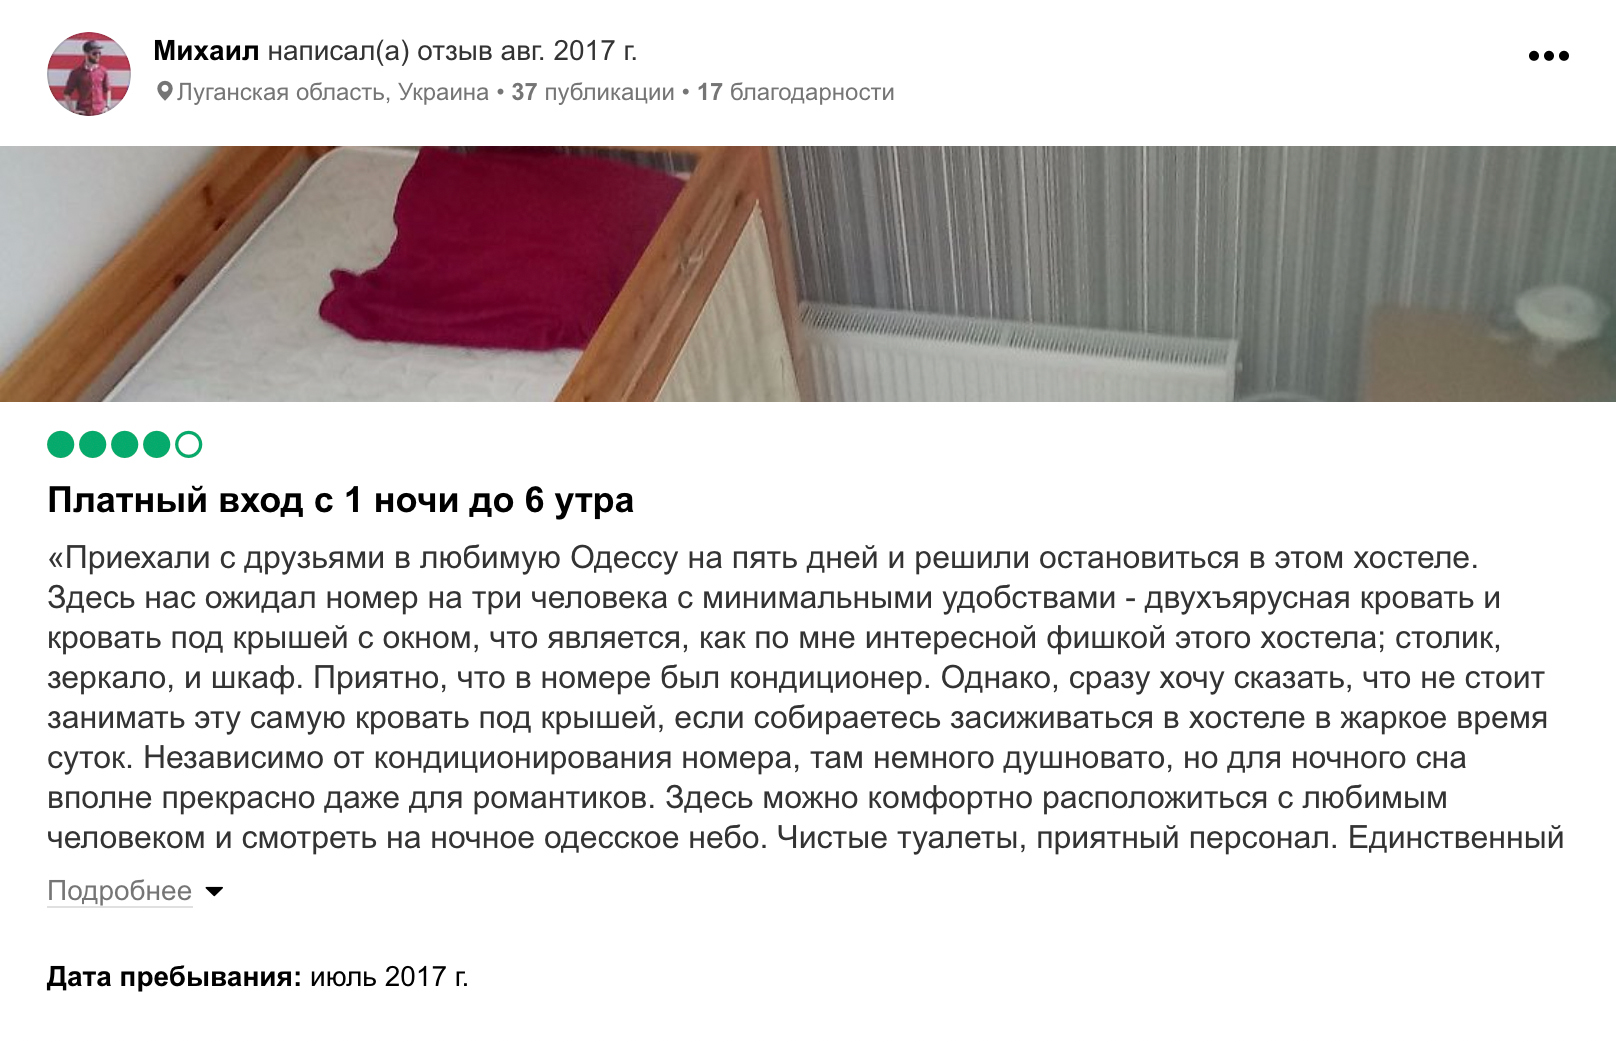 Иногда из отзывов можно узнать полезную информацию. Например, в отзывах об одесском хостеле «Уют» пишут, что там ночной вход вообще платный — 20 гривен (40⁠—⁠60 ₽). Источник: tripadvisor.ru